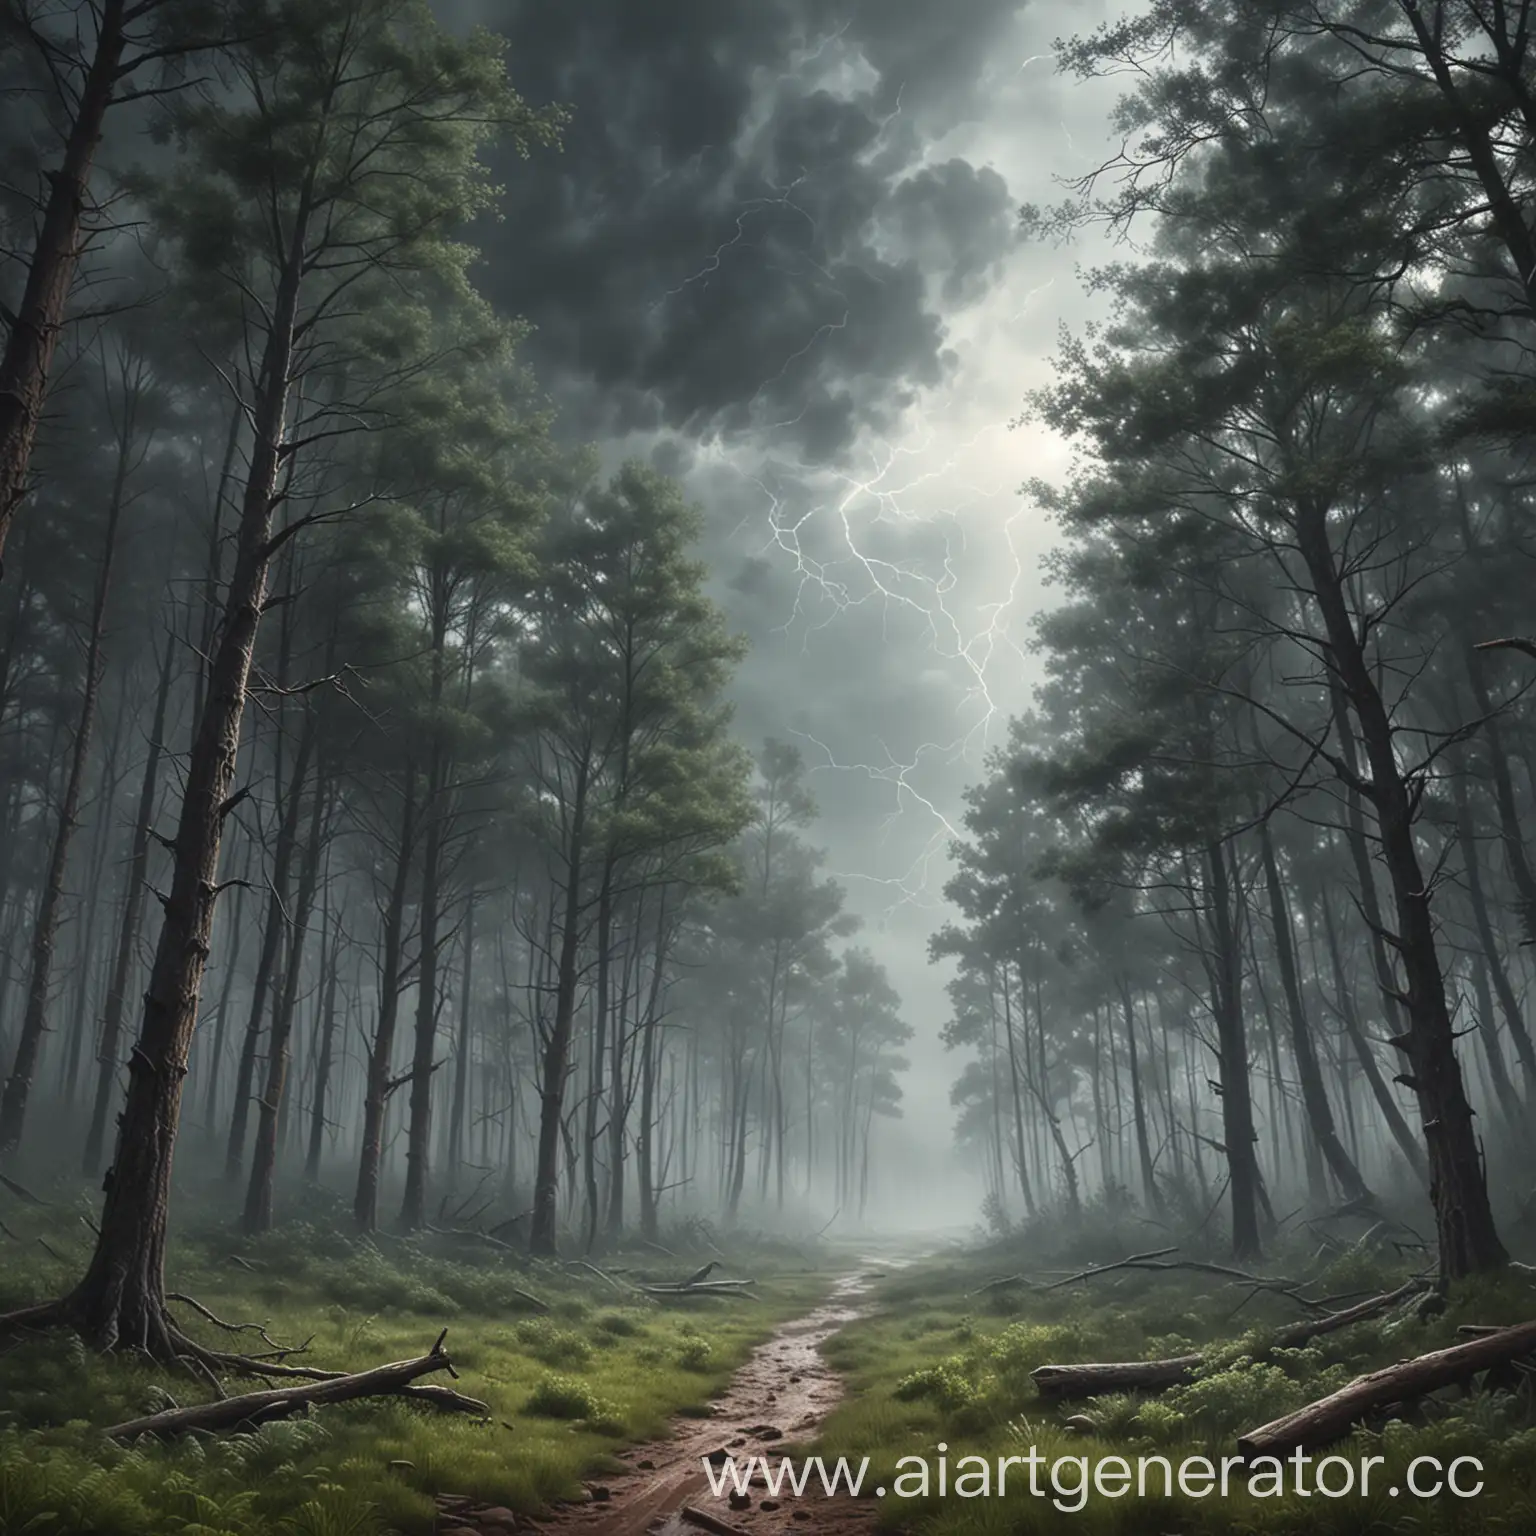 гроза в мае, тревожный нарисованный лес, туманность, реалистичность